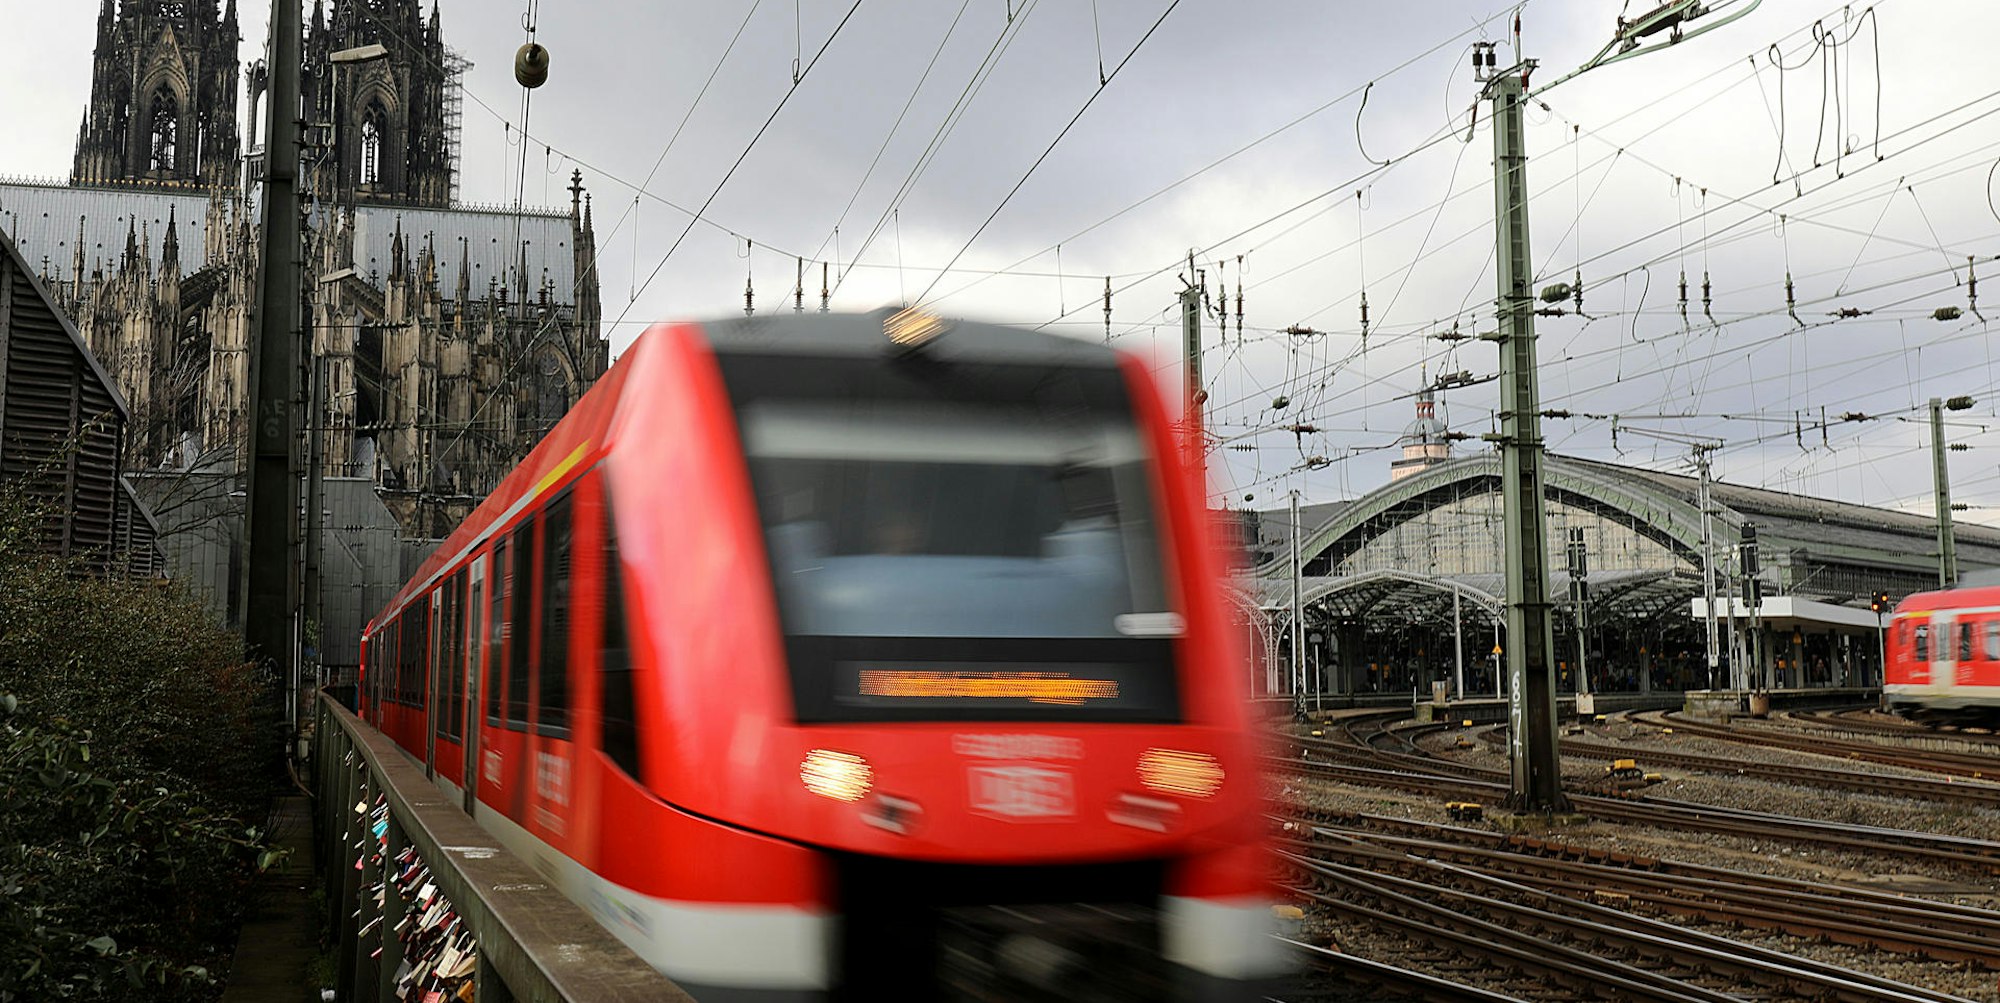 DPA Regio-Bahn vor Kölner Dom